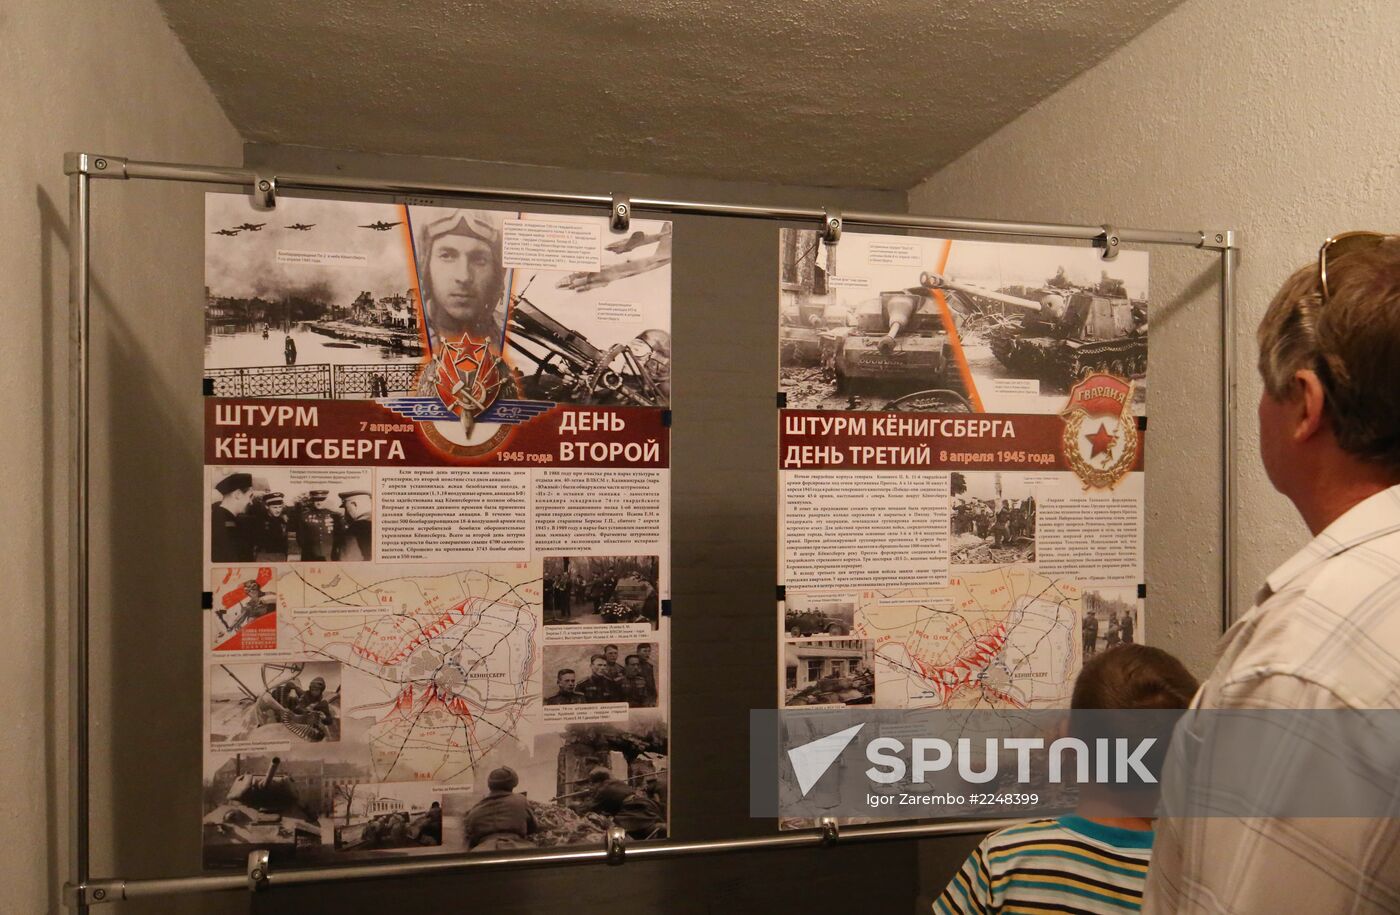 Exposition of Bunker Museum in Kaliningrad